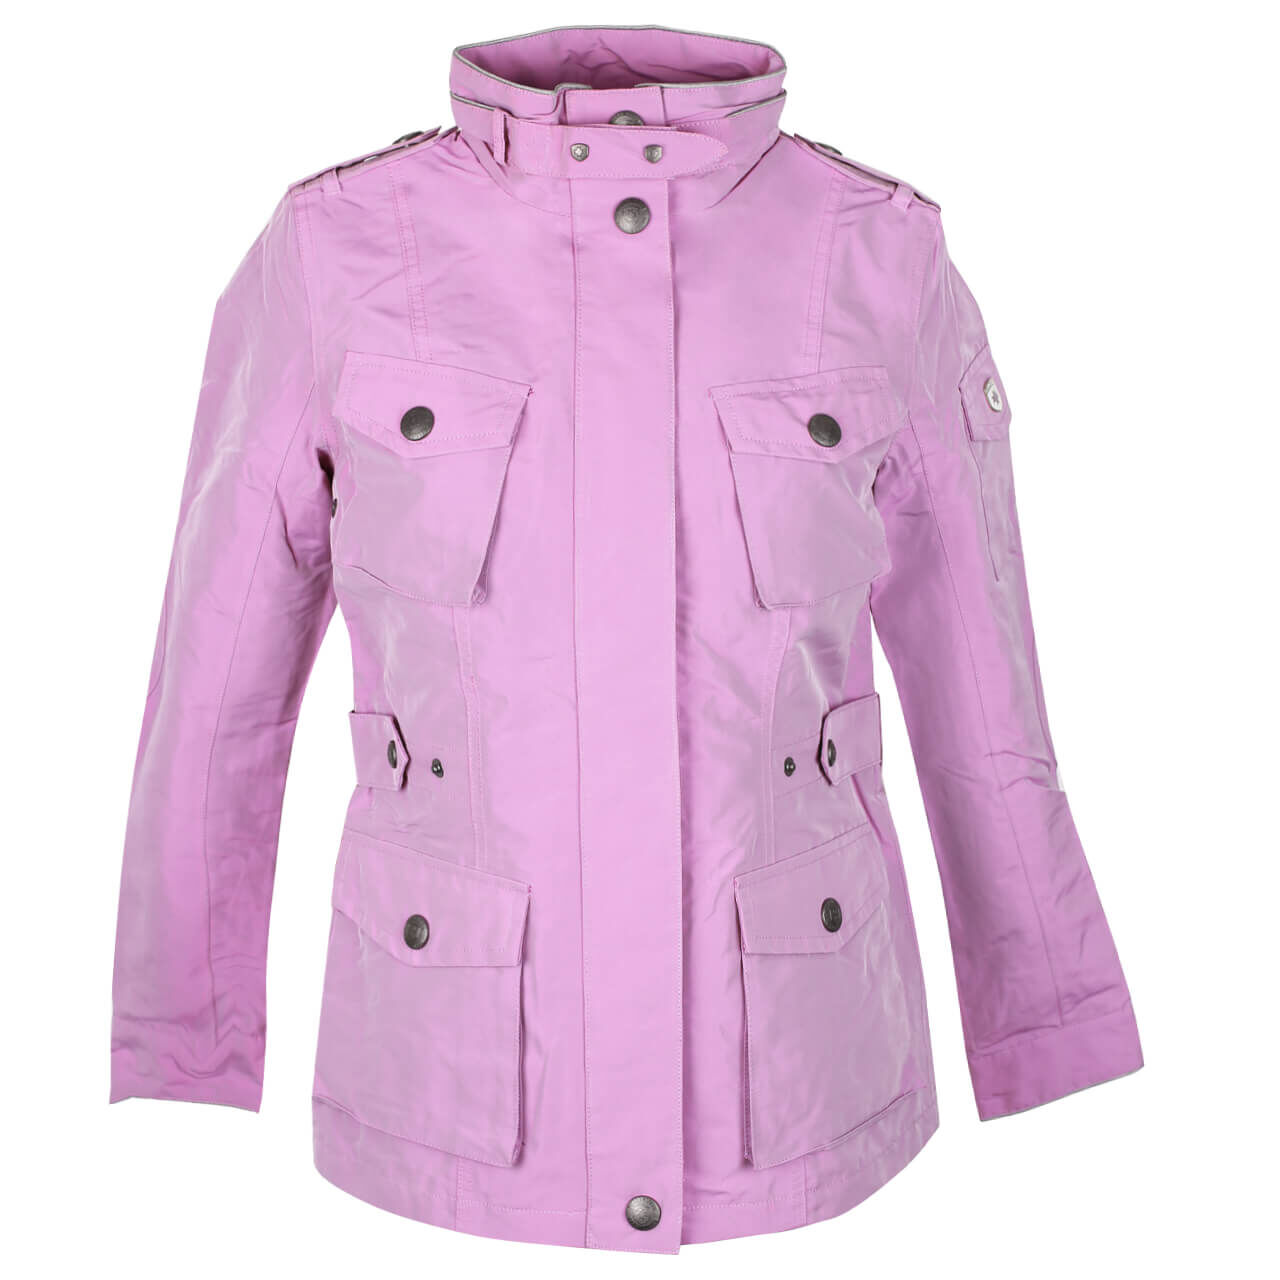 Wellensteyn Azure Jacke für Damen in Flieder-Pink